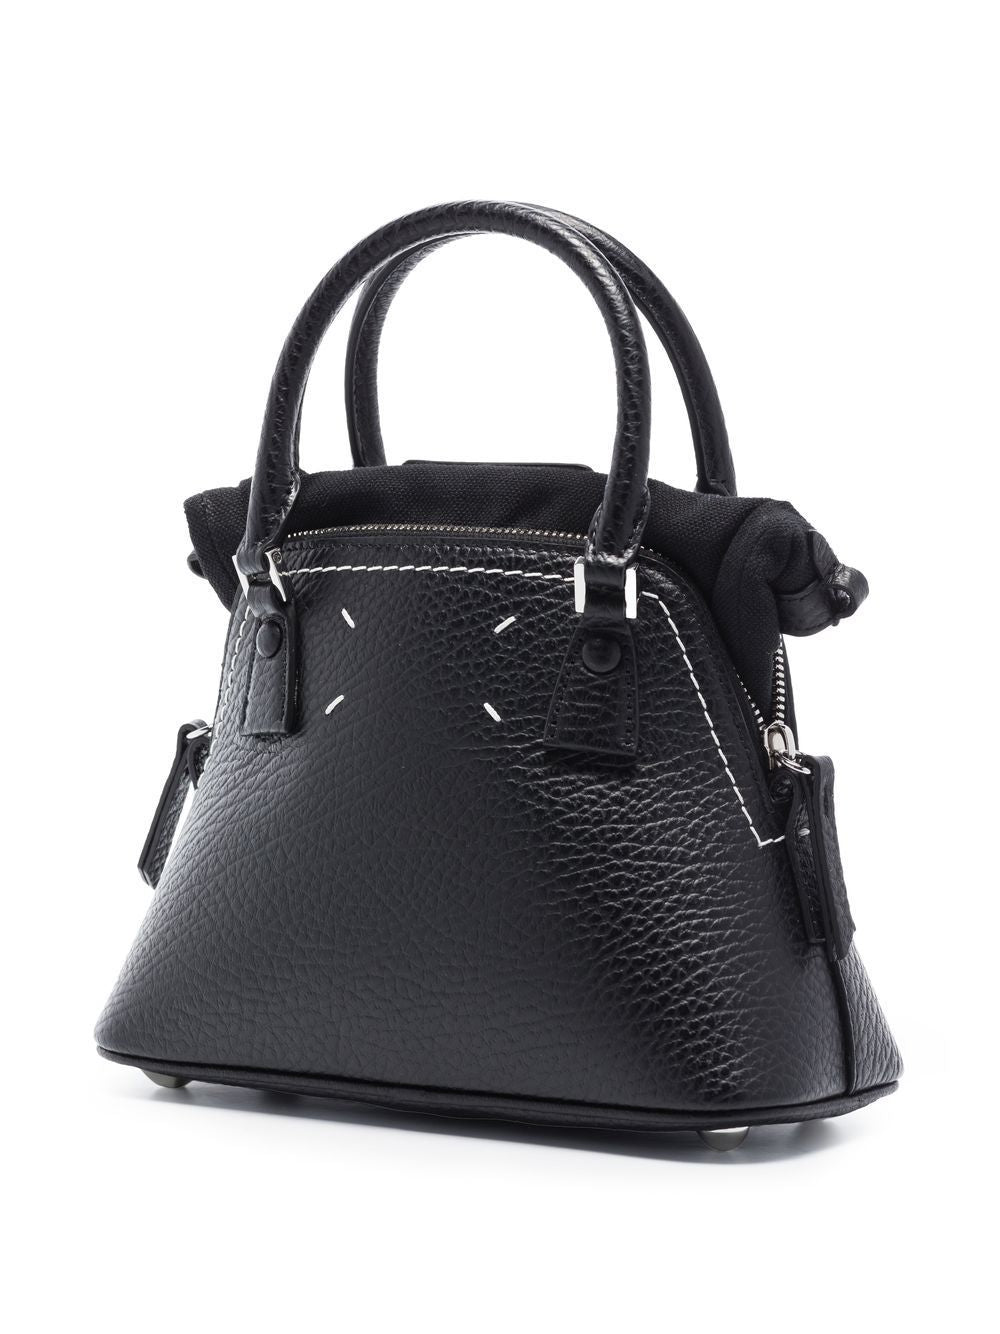 Túi đeo vai tay cầm da màu đen đẳng cấp cho phụ nữ - FW23